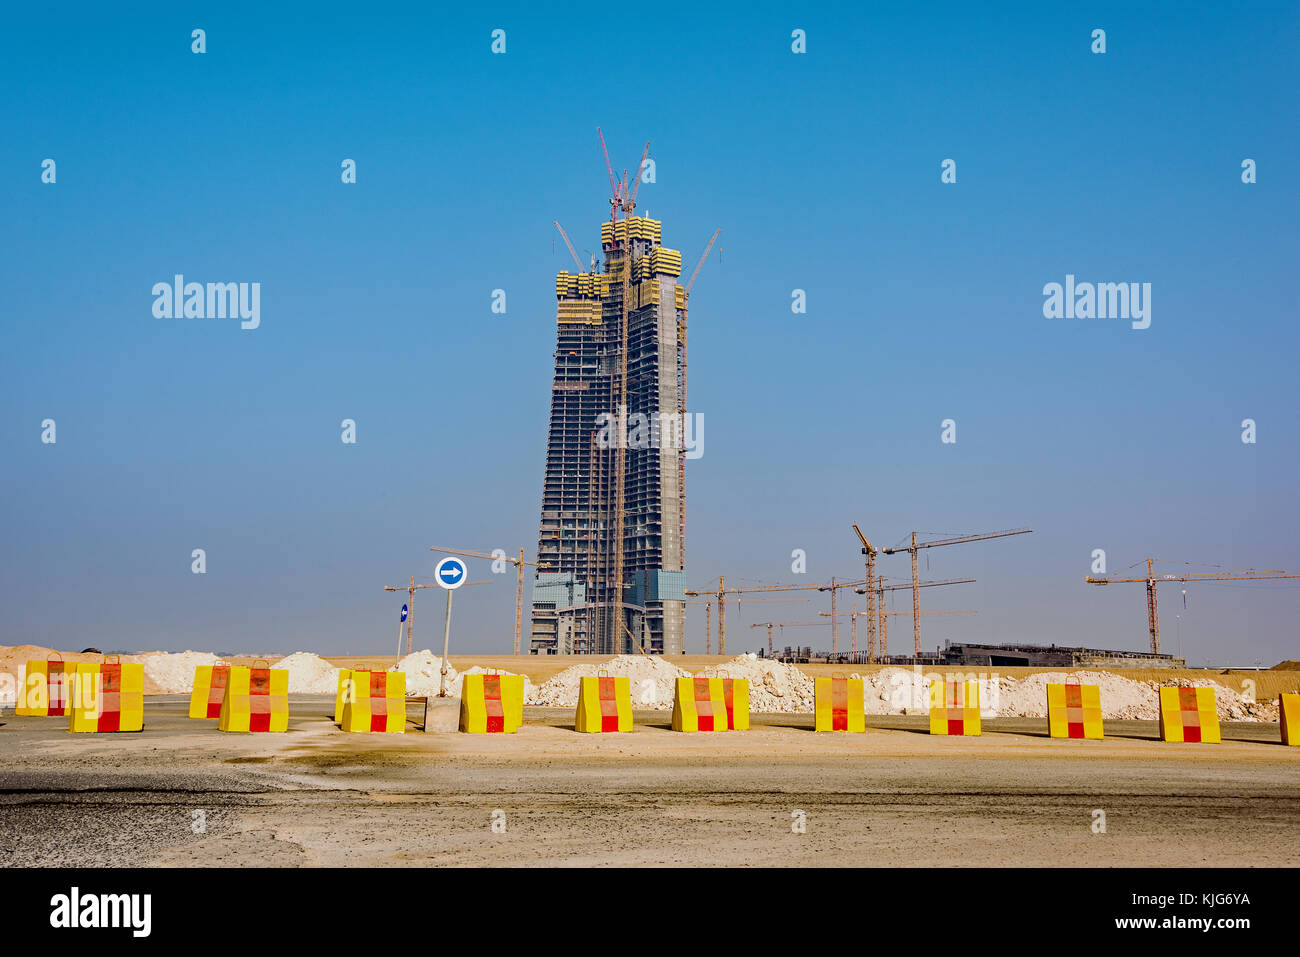 Le nouveau royaume tower en construction au nord de la ville de Jeddah en Arabie saoudite. Banque D'Images